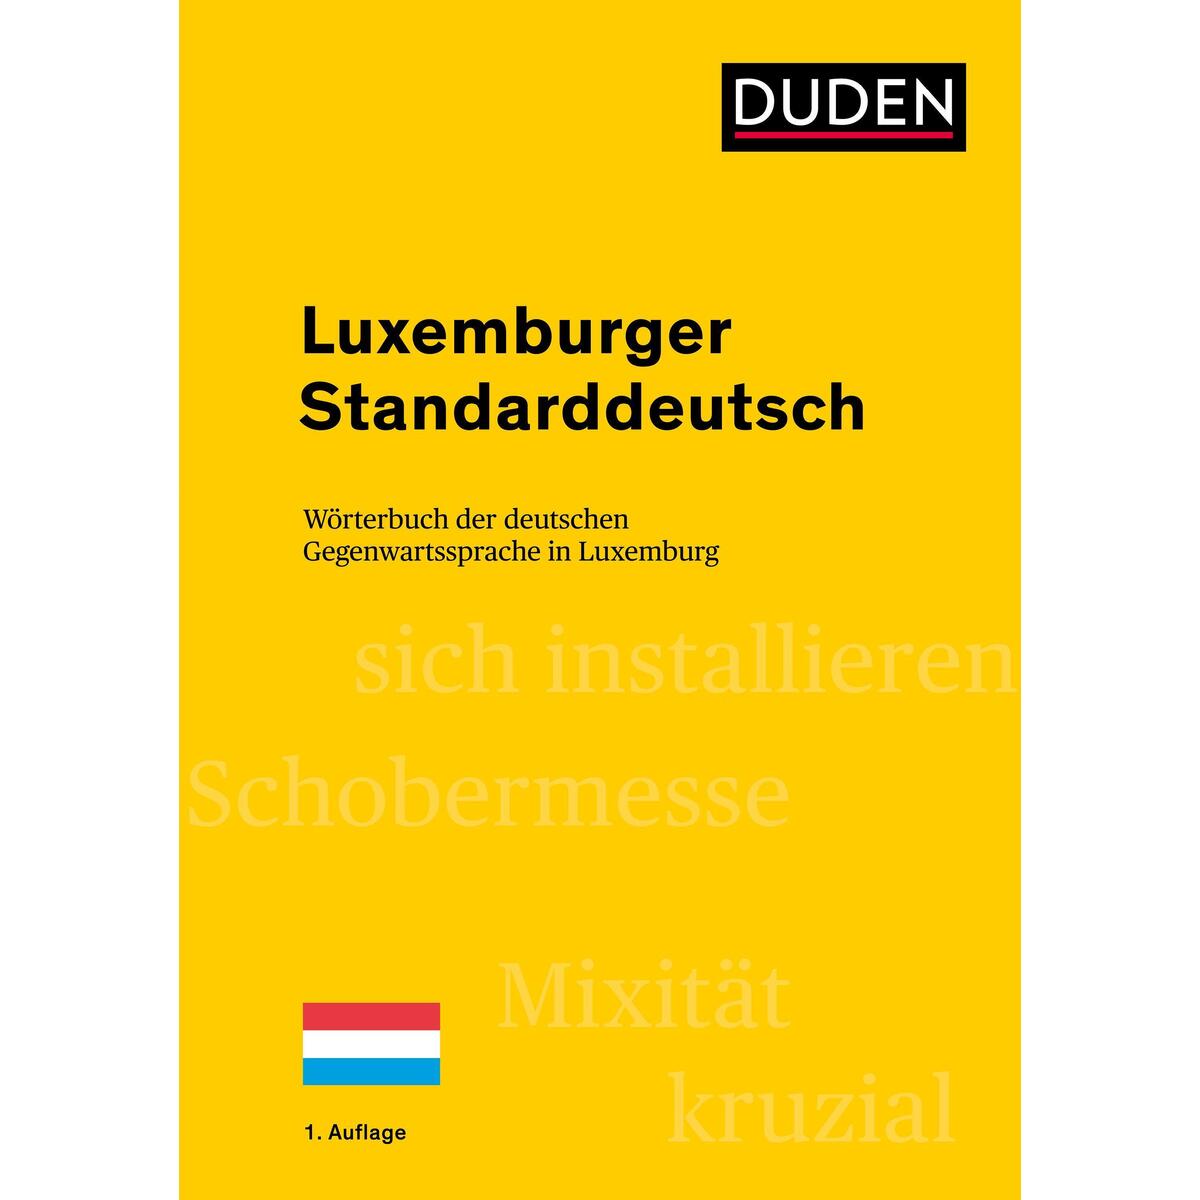 Luxemburger Standarddeutsch von Bibliograph. Instit. GmbH